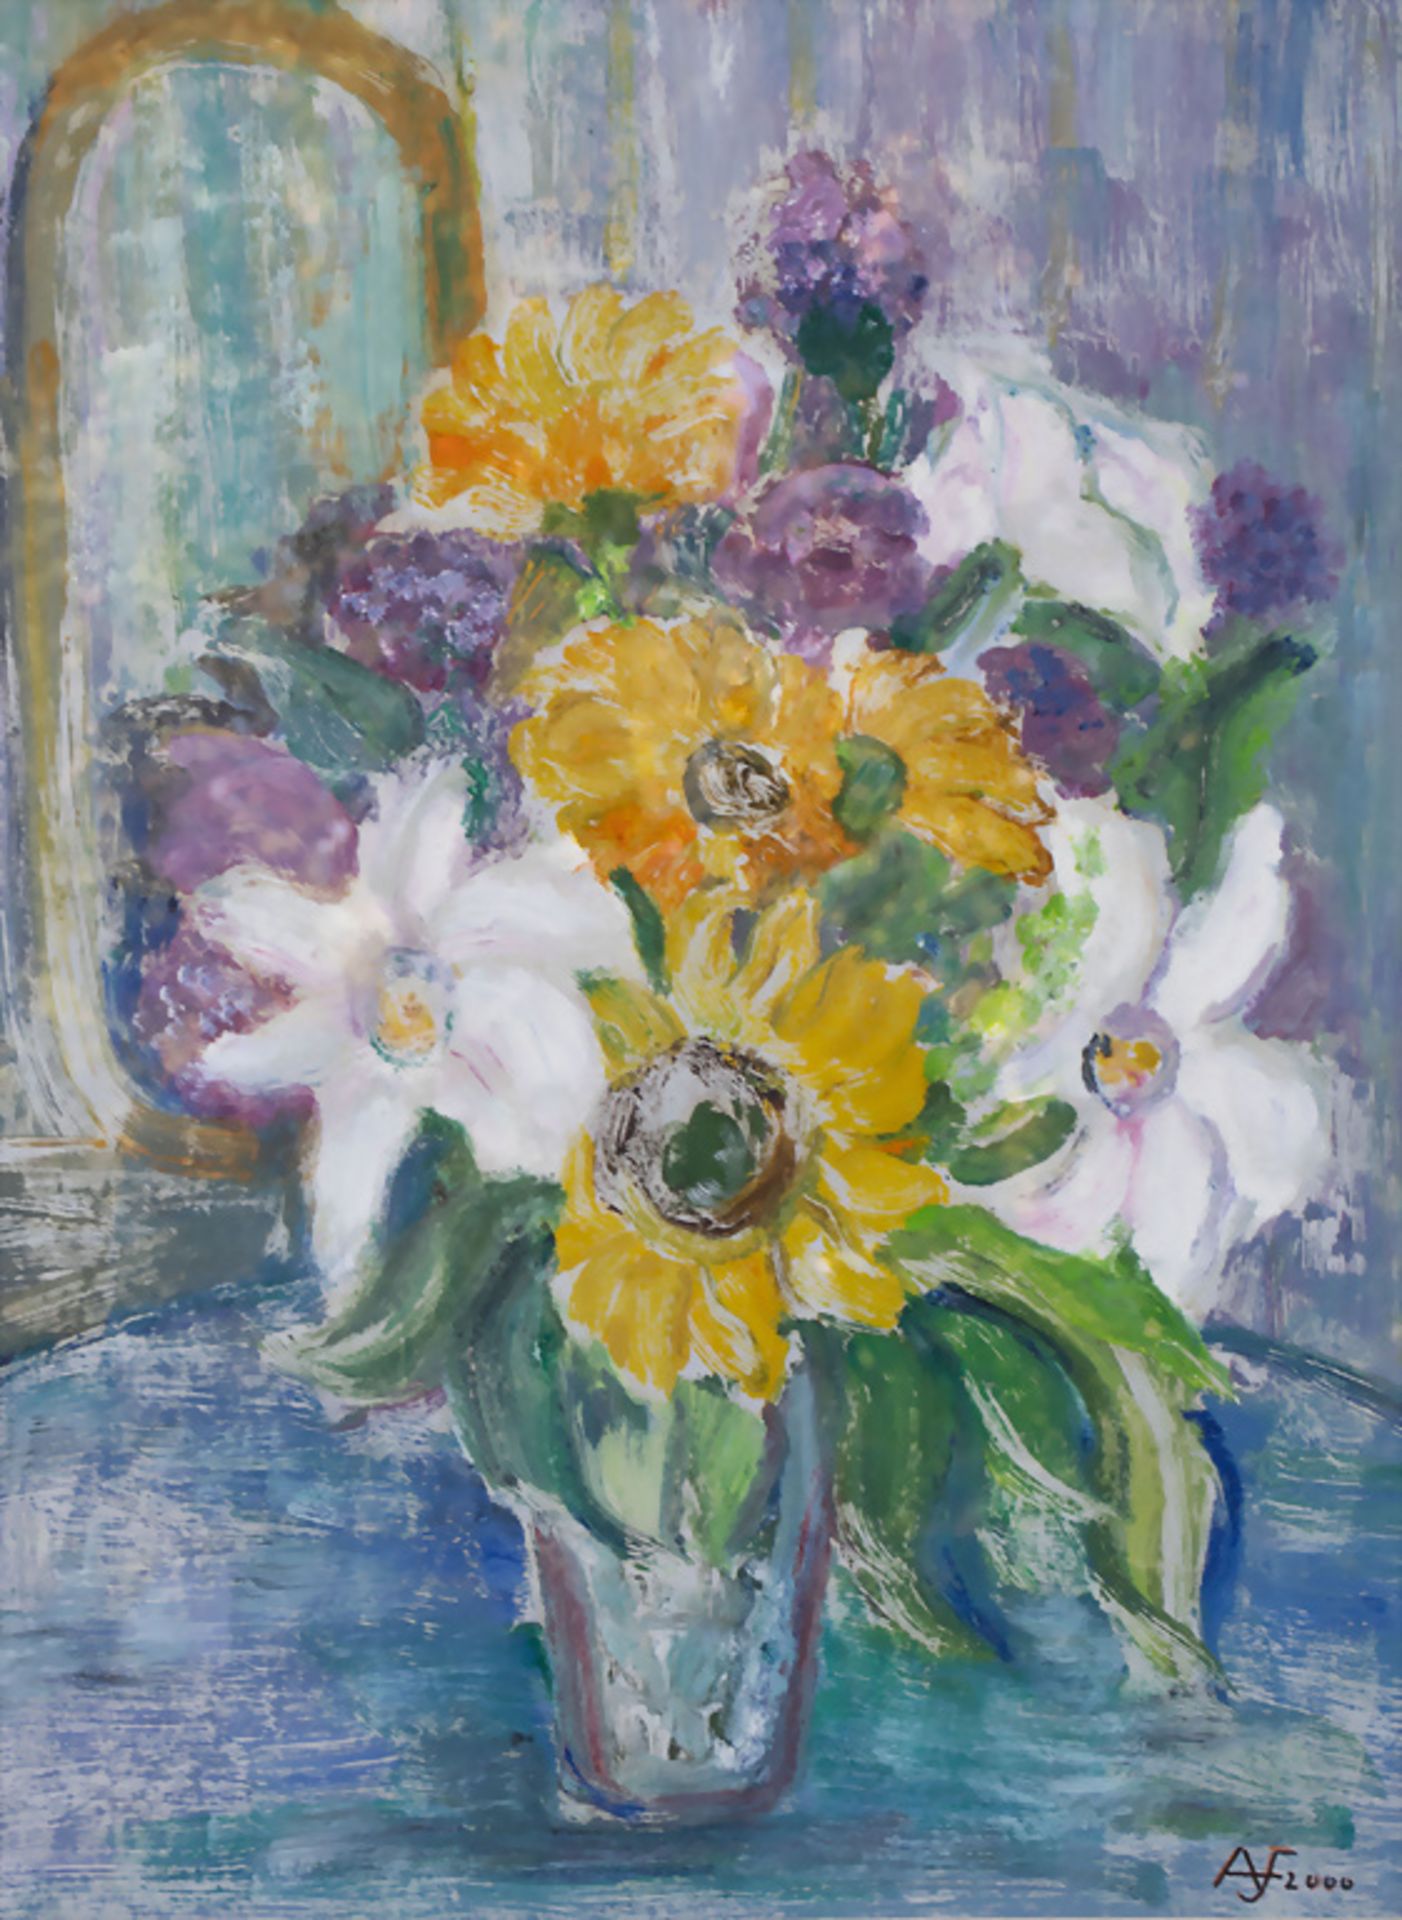 Aribert FROSCH (*1932), 'Blumenstrauß mit weißen Lilien' / 'A bouquet of white lilies', 2000